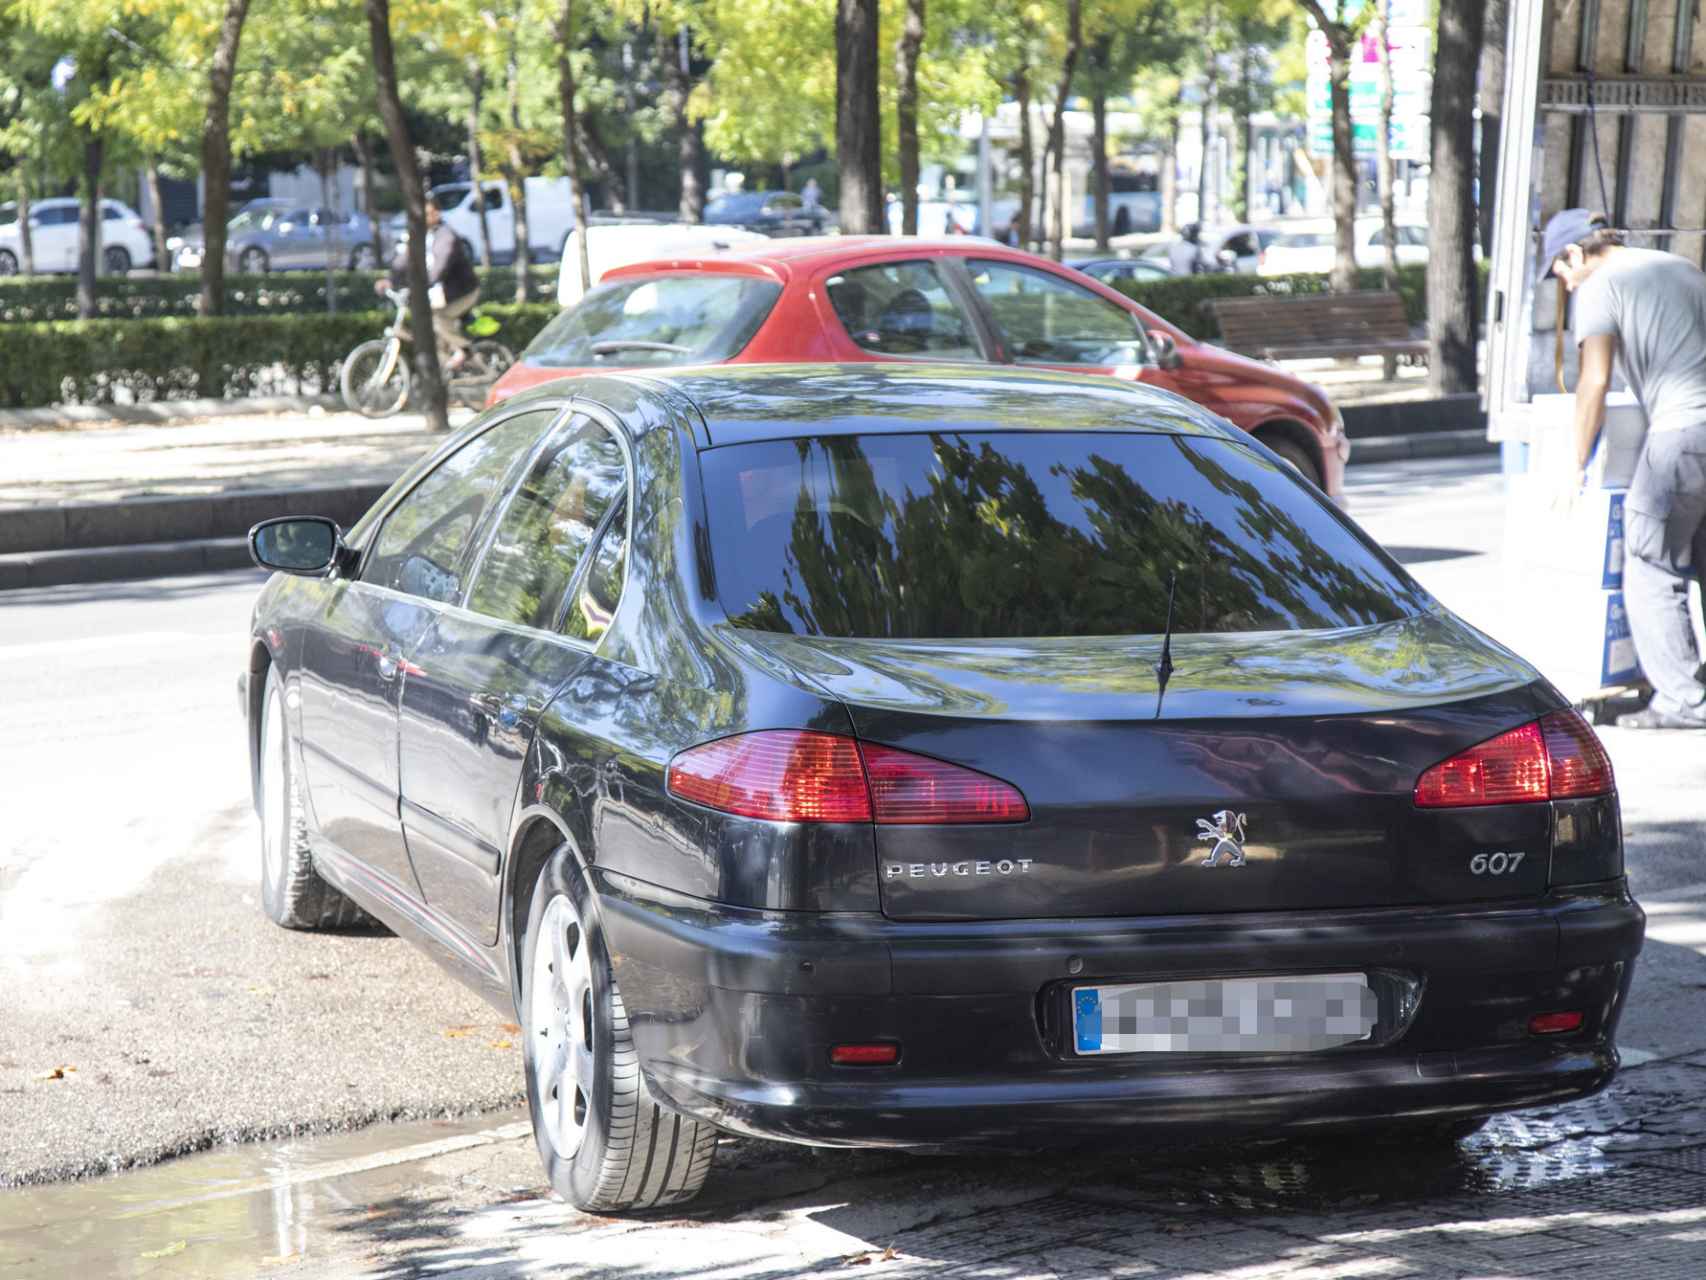 Mariano Rajoy, este miércoles, saliendo del aparcamiento sobre su Peugeot 607 en Madrid